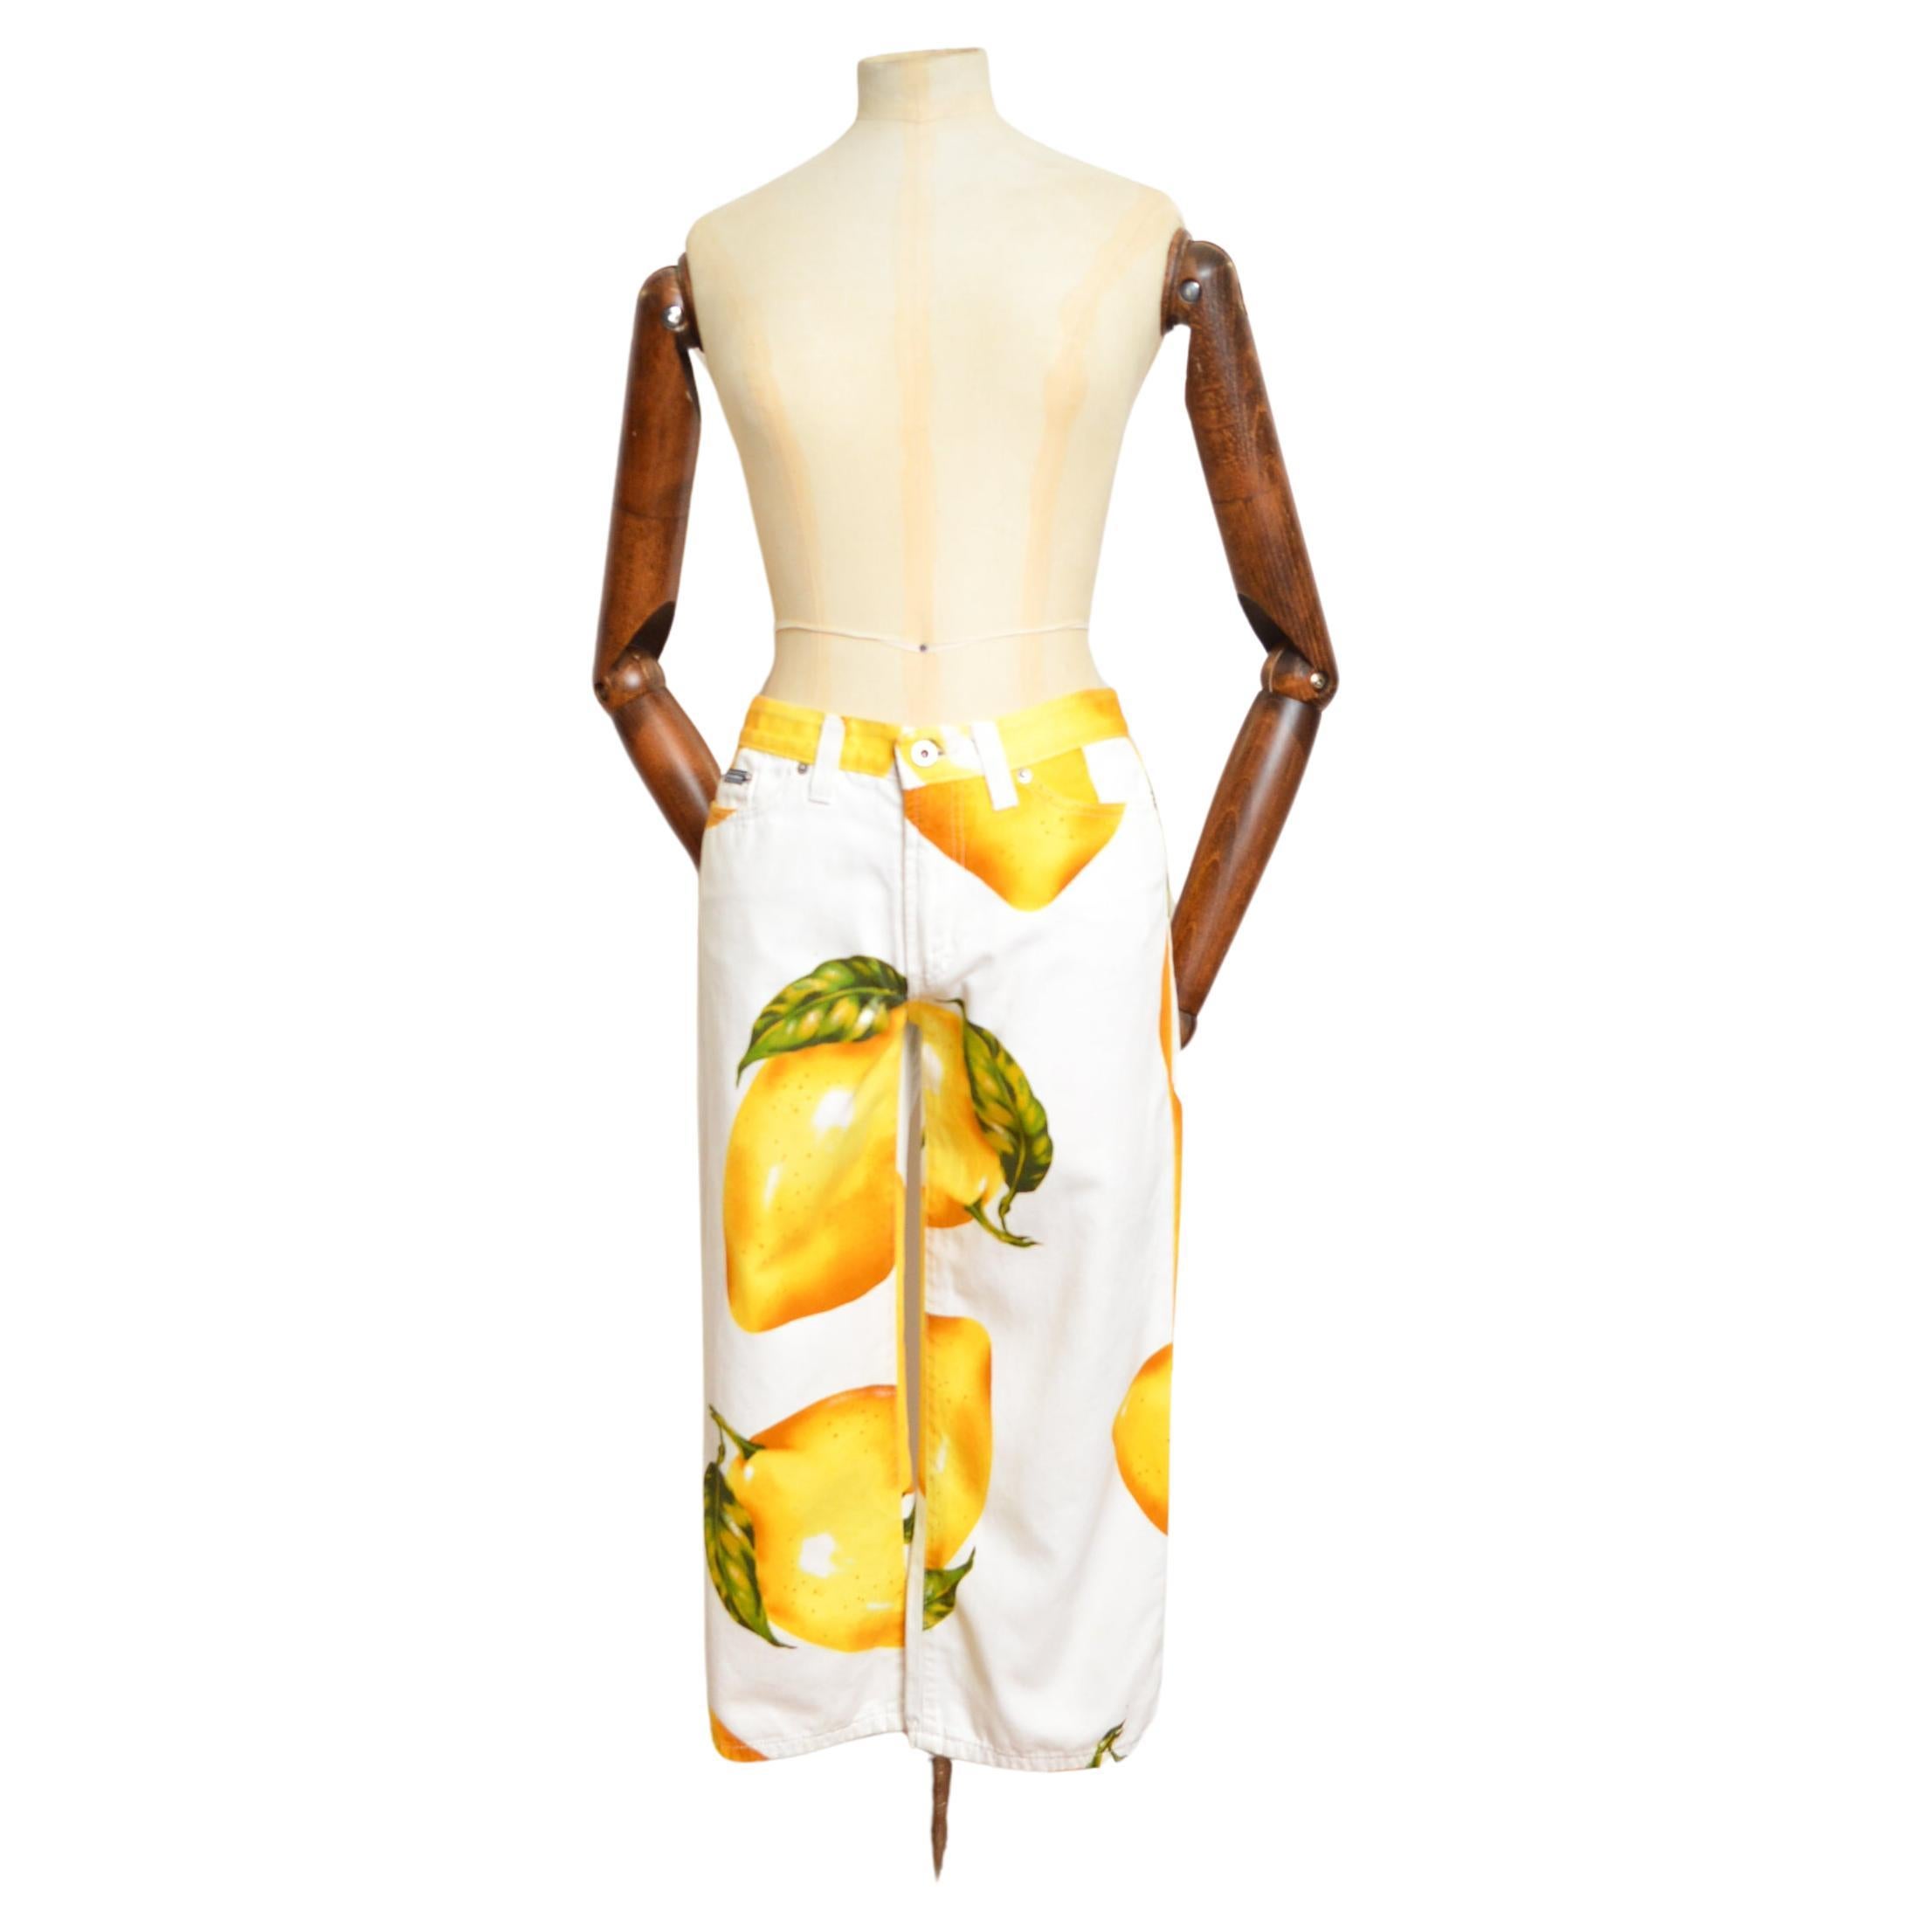 Pantalon 'Capri' Dolce & Gabbana Vintage 2000's en coton imprimé citron avec une jambe qui passe au dessus du genou !

FABRIQUÉ EN ITALIE.  

Fermeture à glissière / bouton
Design/One classique à 4 poches 
Grandes boucles de ceinture 
Impression